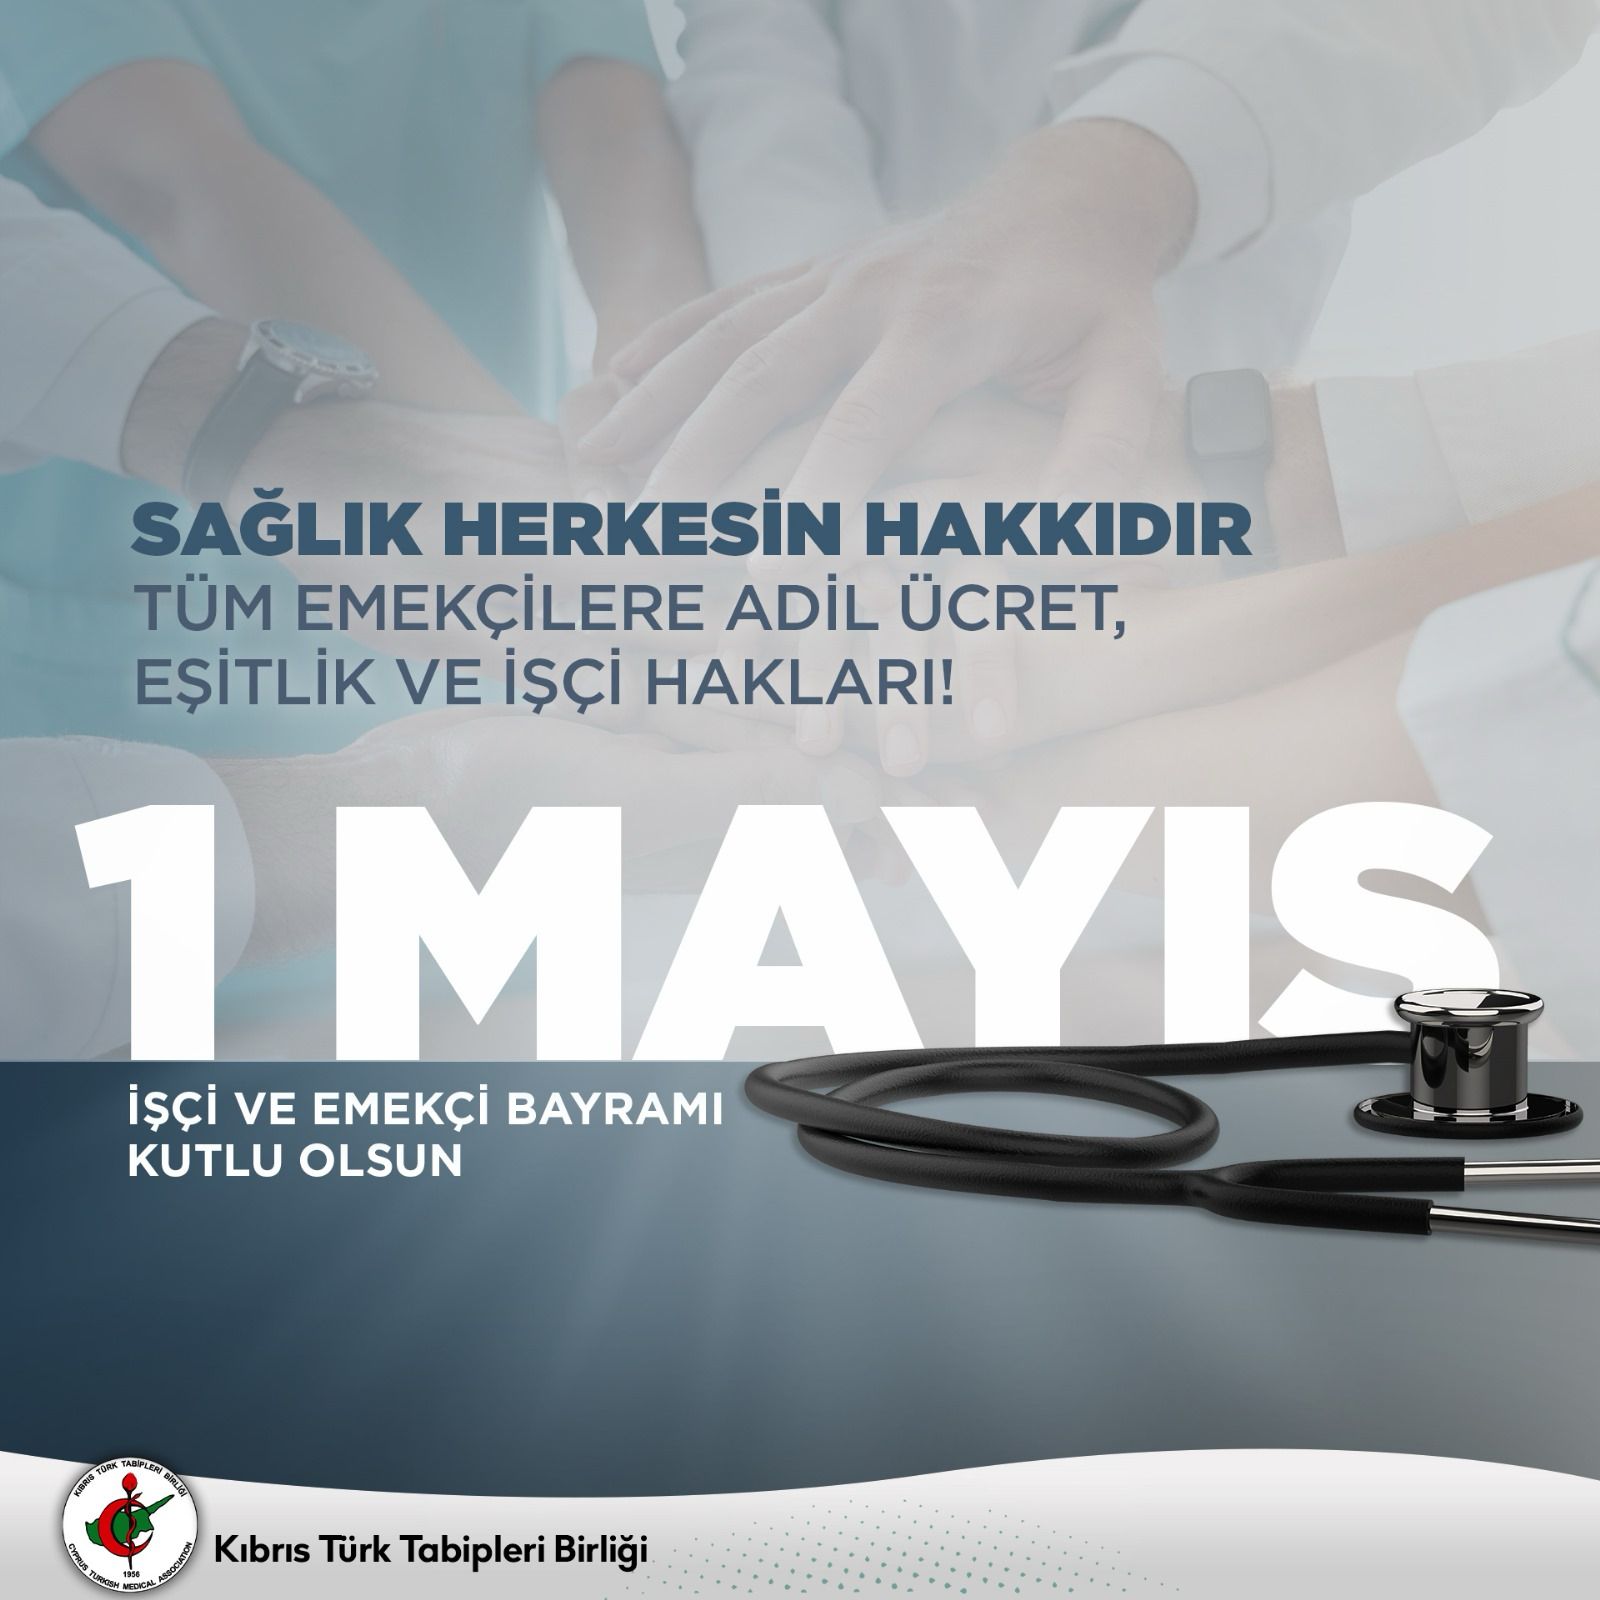 Kıbrıs Türk Tabipleri Birliği: “Sağlık herkesin hakkıdır”